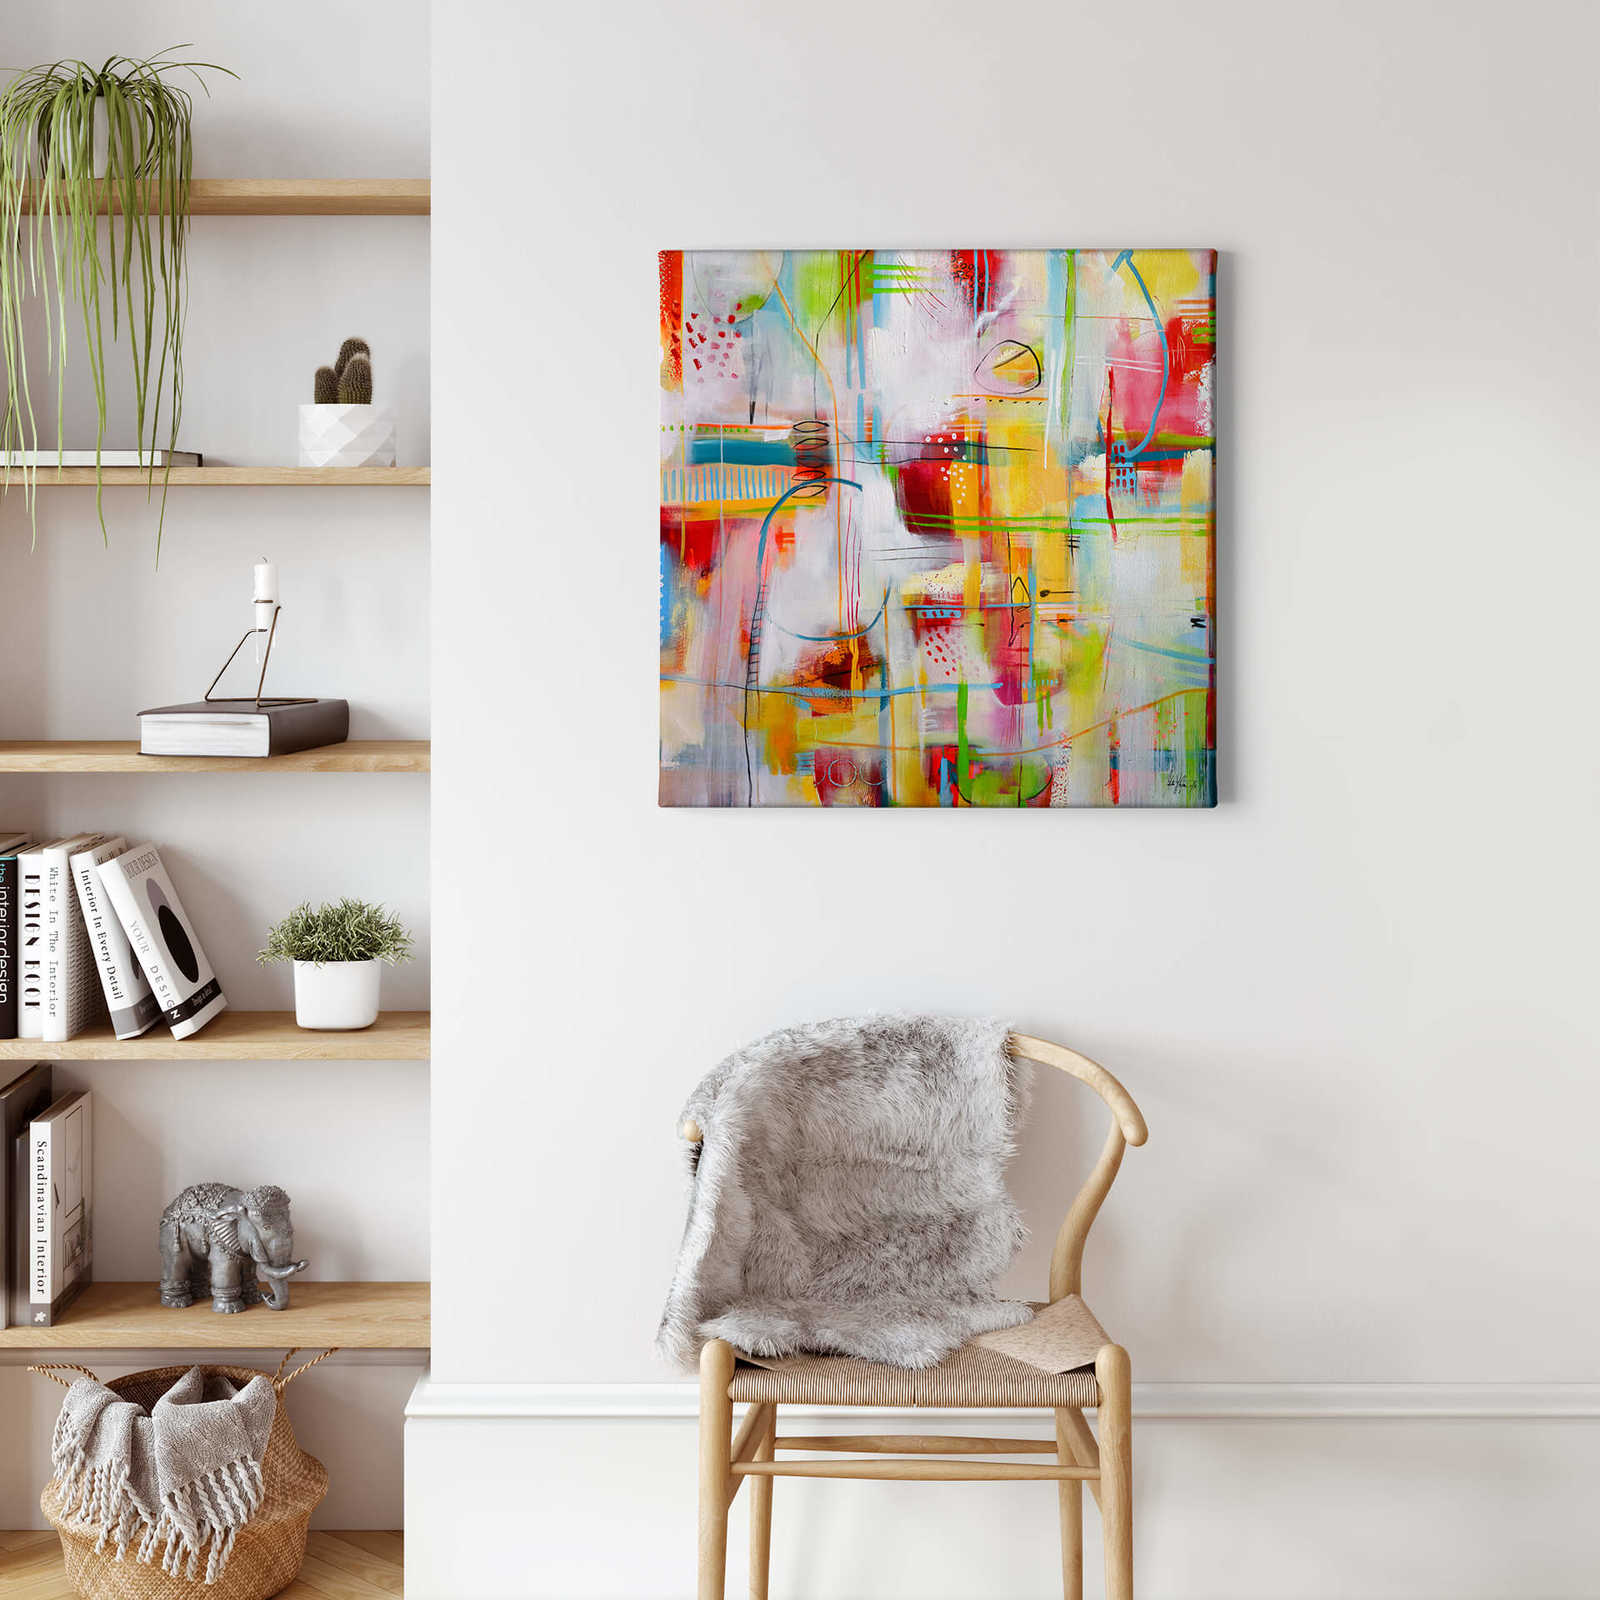             Fedrau Lienzo arte abstracto - 0,50 m x 0,50 m
        